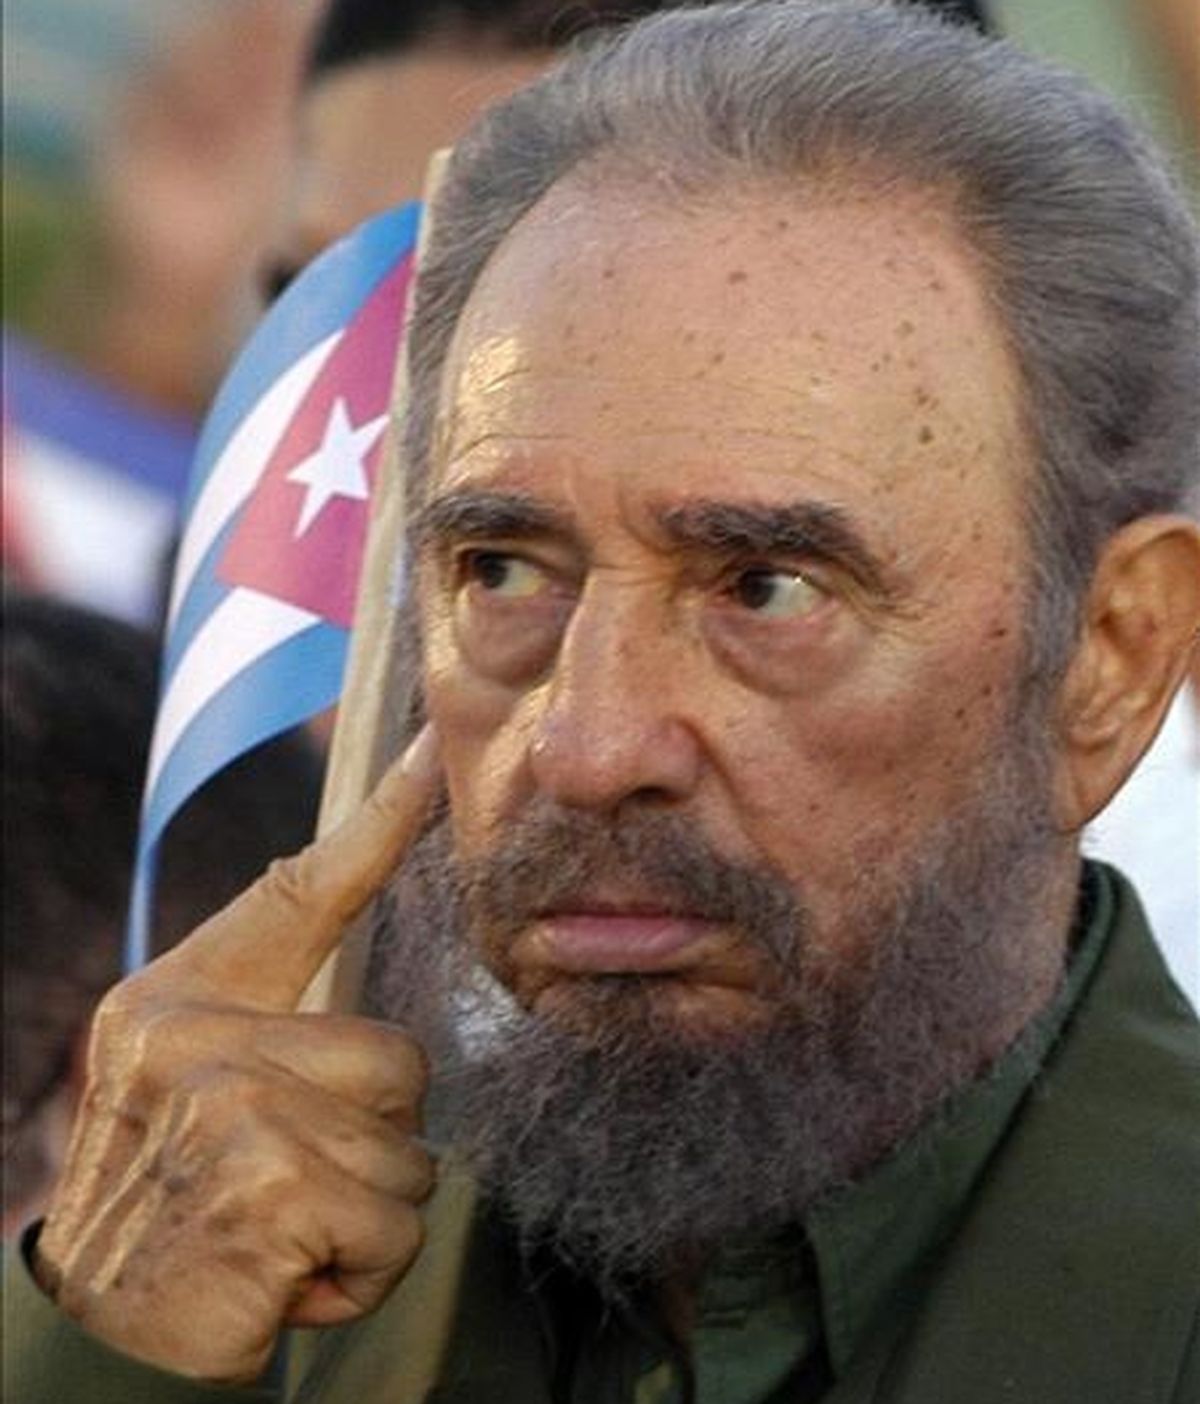 Fidel Castro afirma que "es divertido ver cómo se agitan las entrañas del imperio, lleno de problemas y contradicciones insuperables con los pueblos de América Latina, a los que pretende dominar eternamente". EFE/Archivo